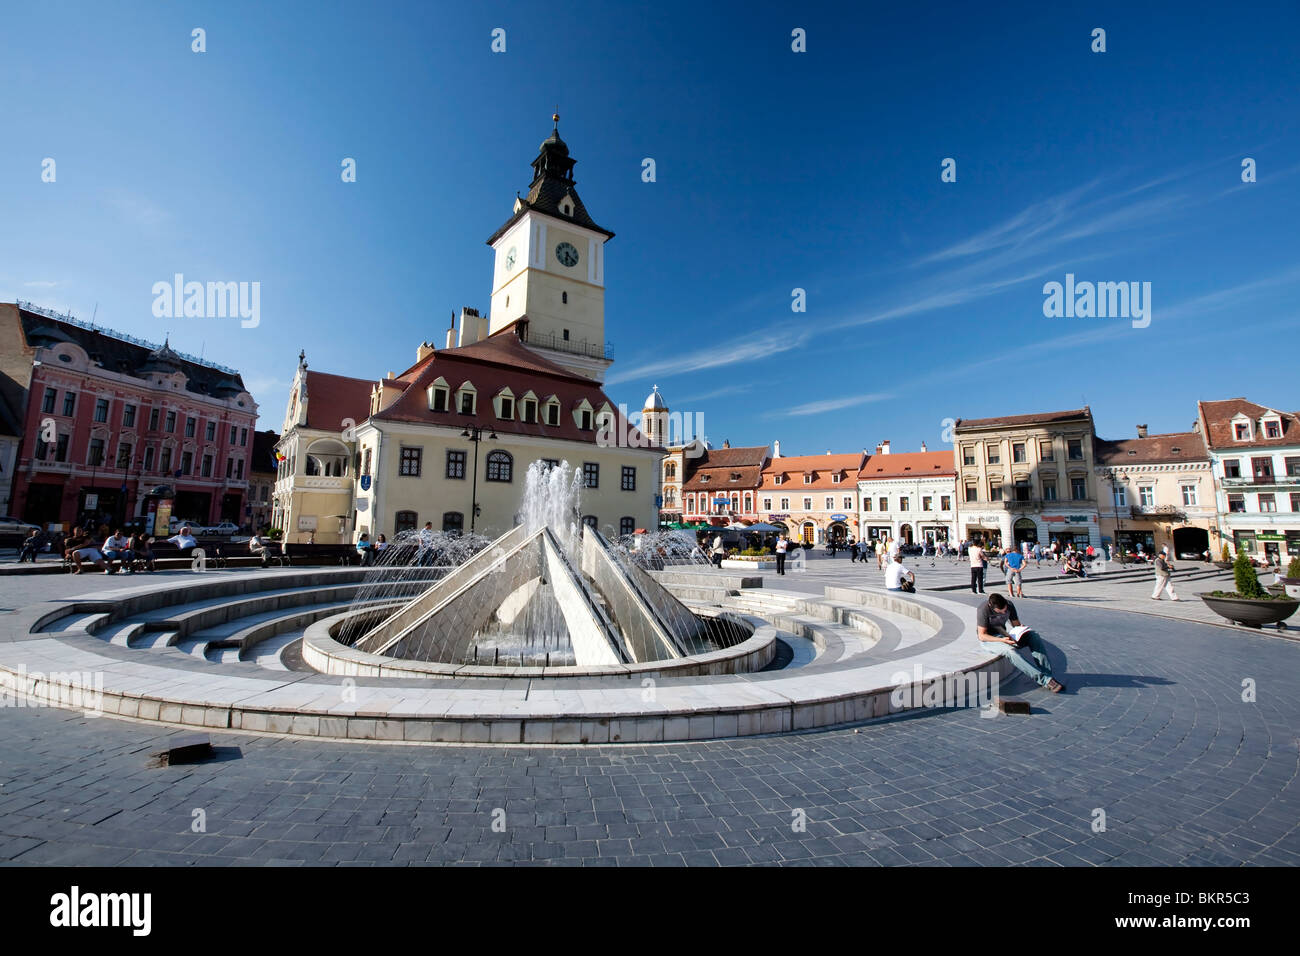 Rumänien, Siebenbürgen, Brasov. Der Brunnen auf dem Hauptplatz der Altstadt, das alte Rathaus hinter. Stockfoto